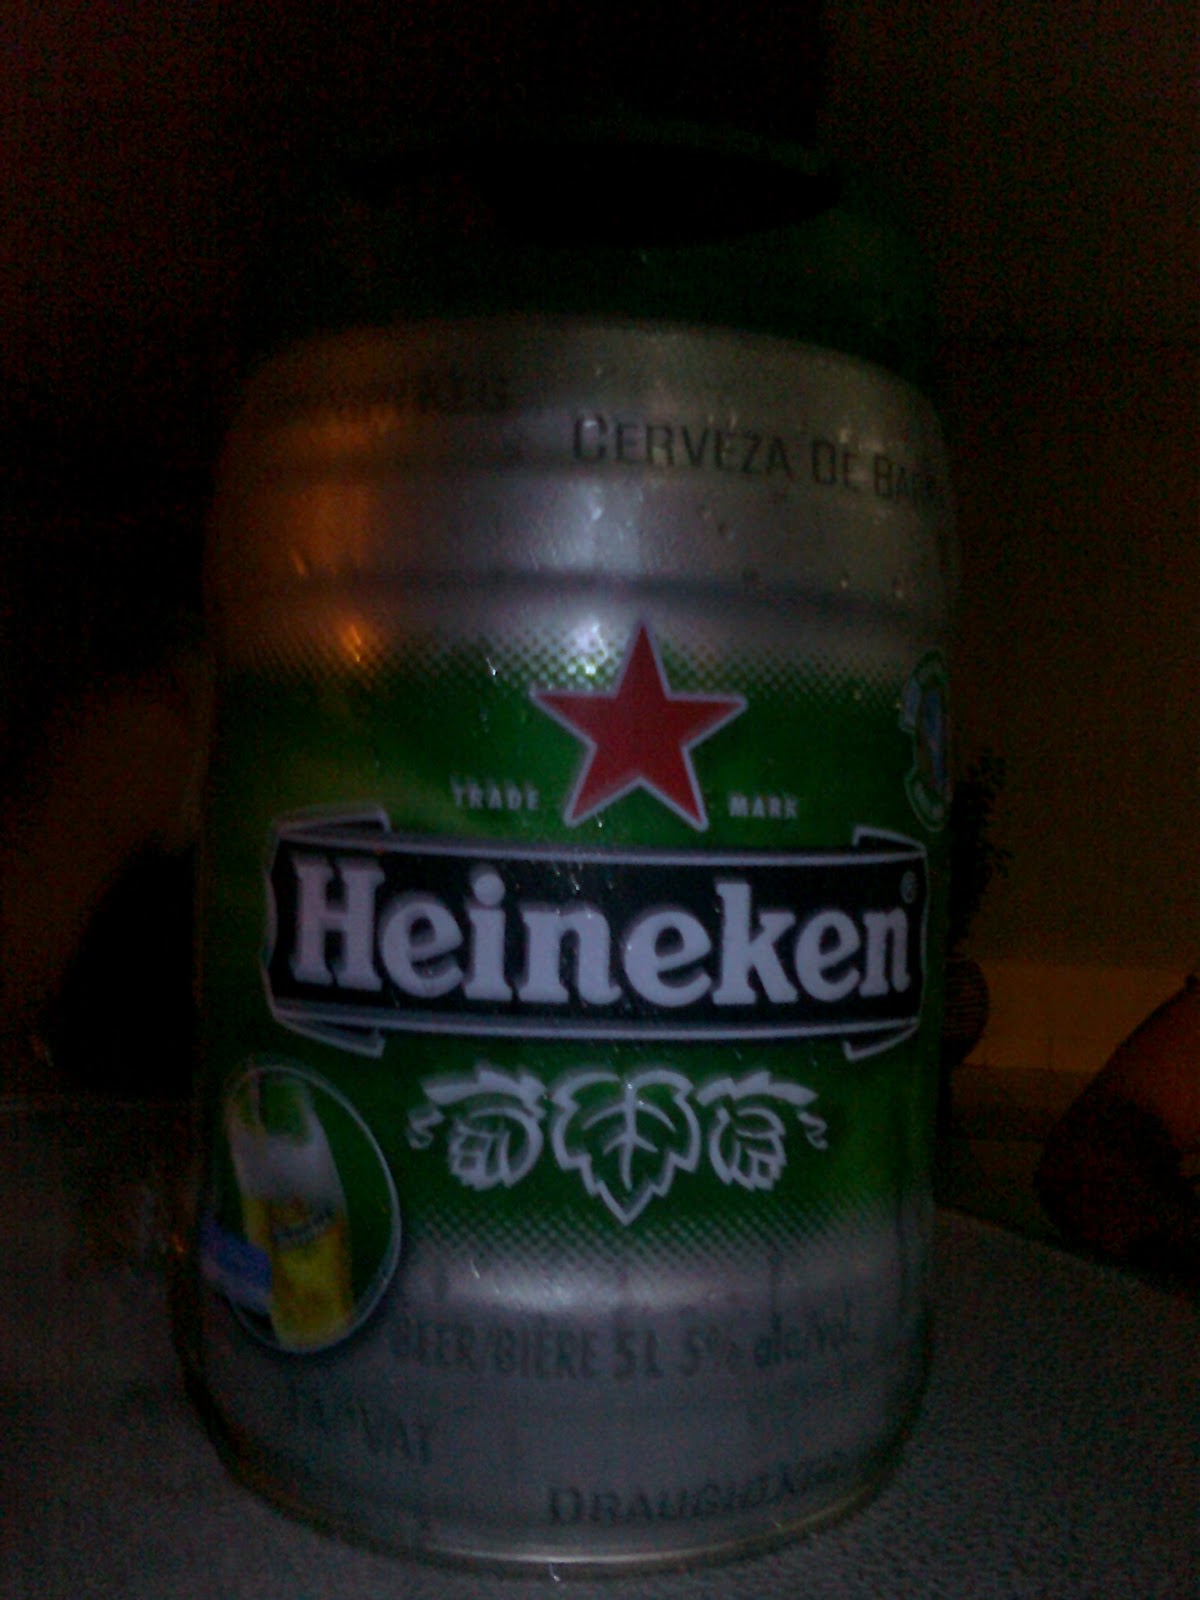 Porque o barril de Heineken sai muita espuma?